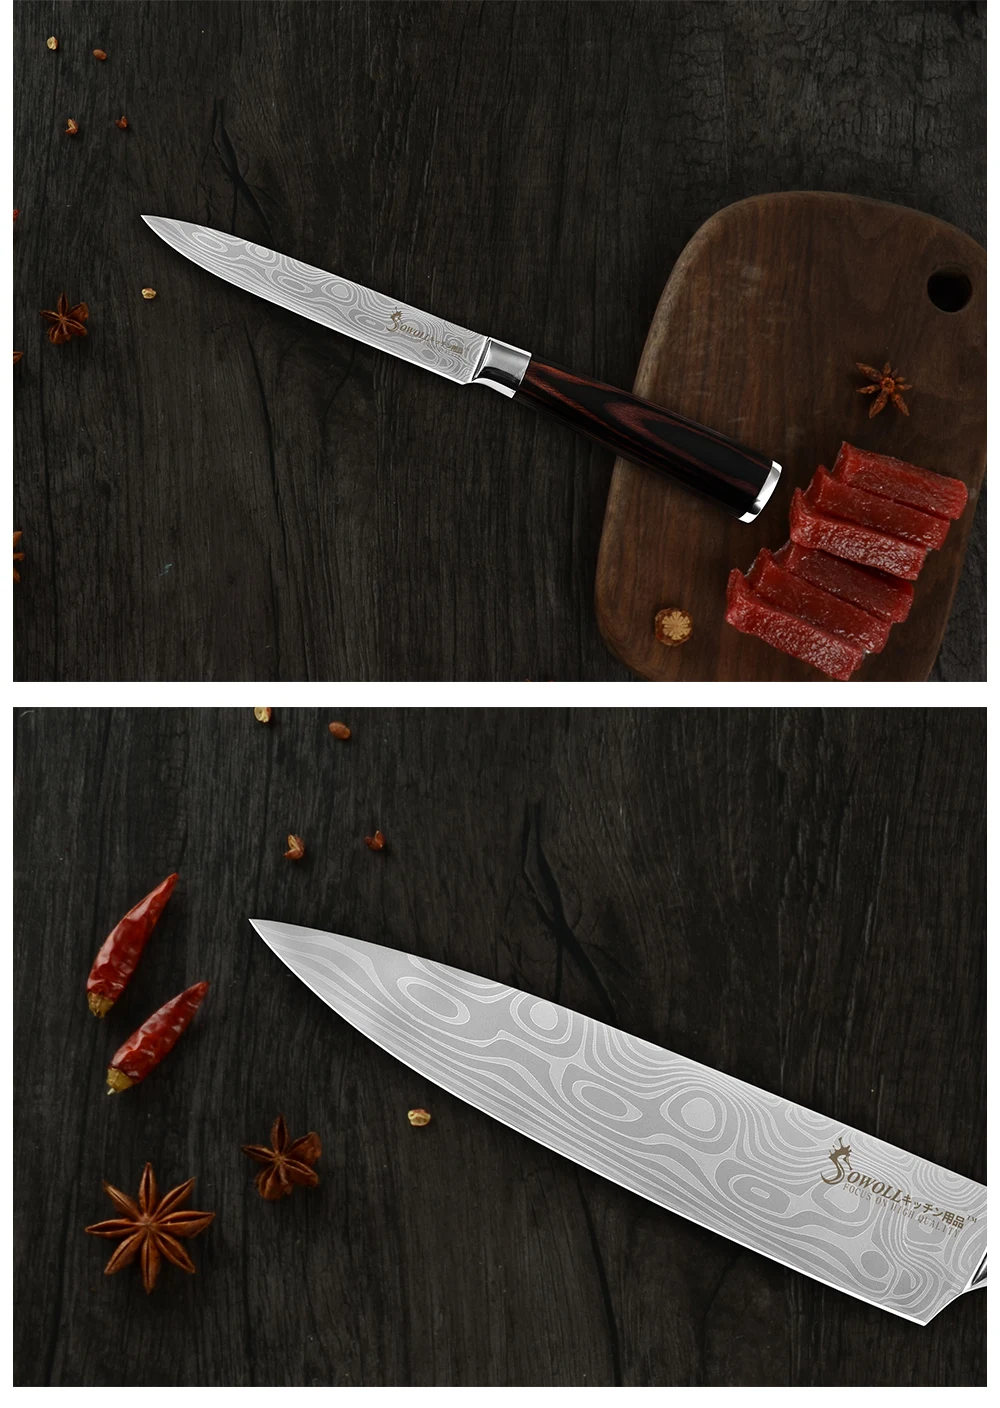 Sowoll 4 шт 7Cr17 кухонные ножи шеф-повара из нержавеющей стали японский лазерный дамасский узор Кухонные гаджеты Кливер ИНСТРУМЕНТЫ для приготовления пищи